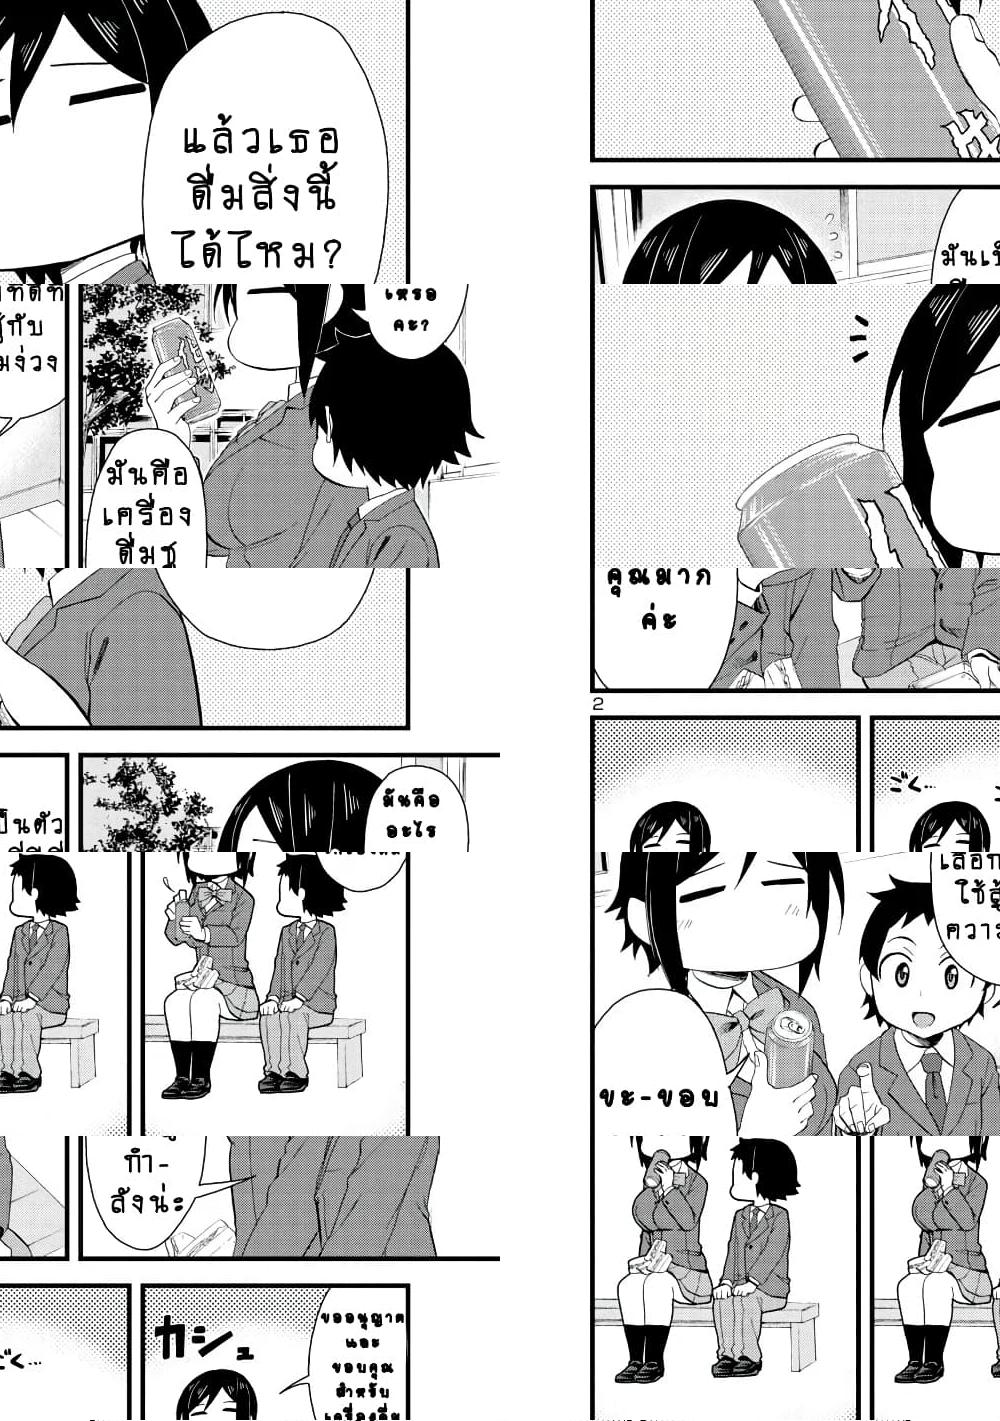 Hitomi-chan Is Shy With Strangers วันๆของน้องฮิโตมิก็เป็นแบบนี้แหล่ะ - 18 - 2